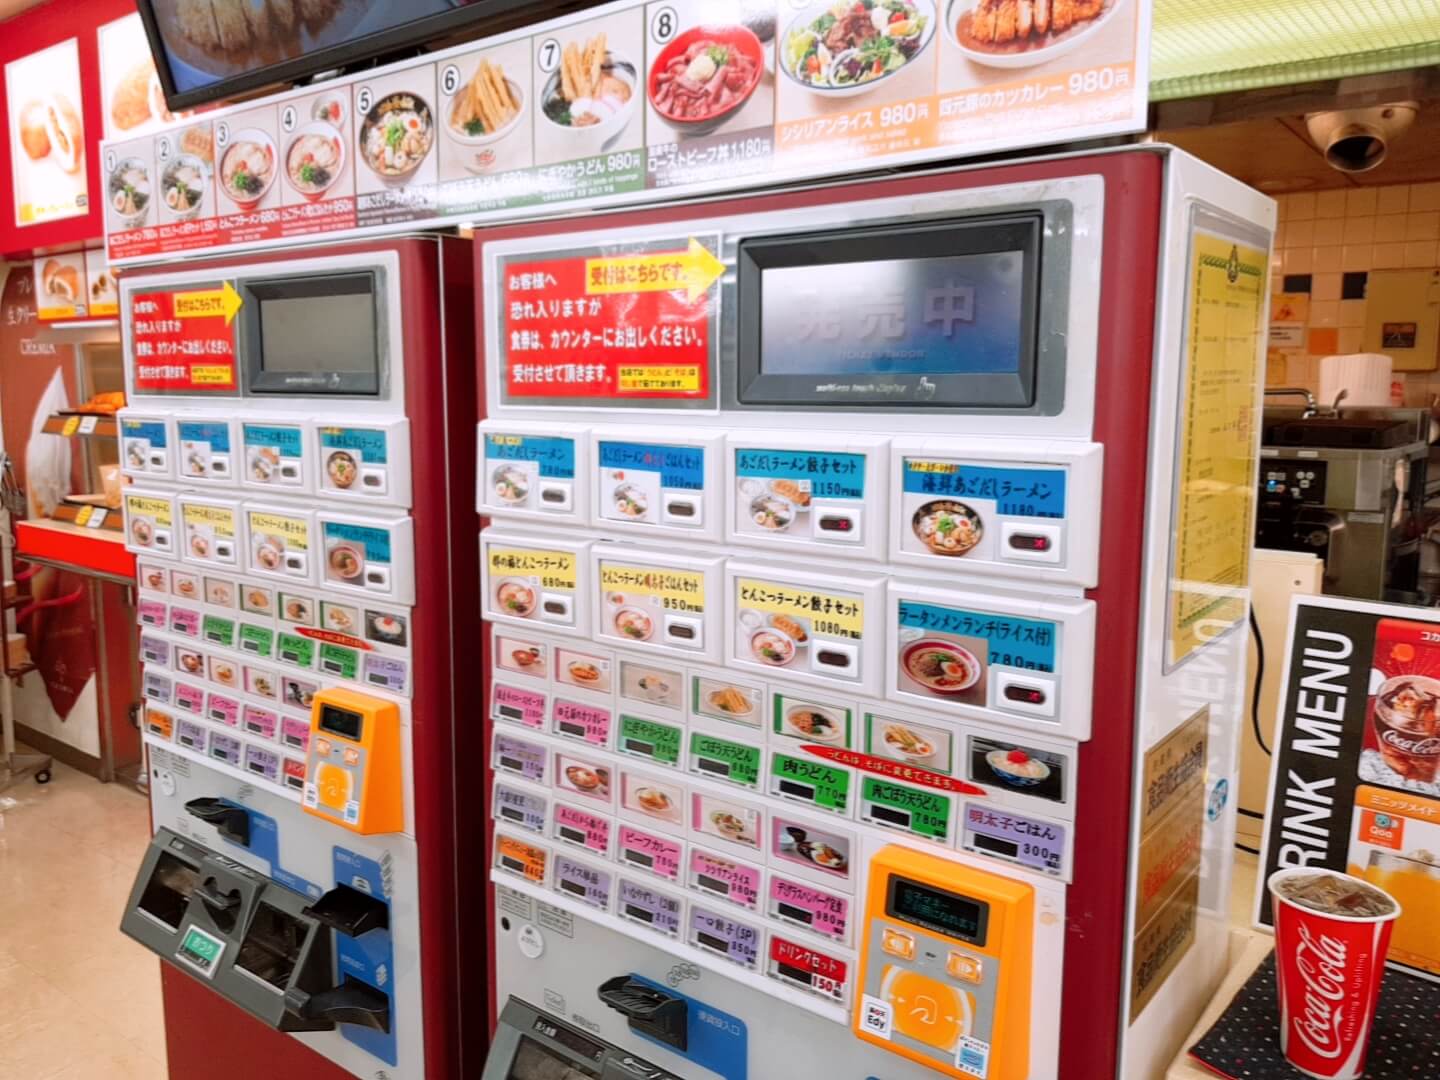 주문용 자판기